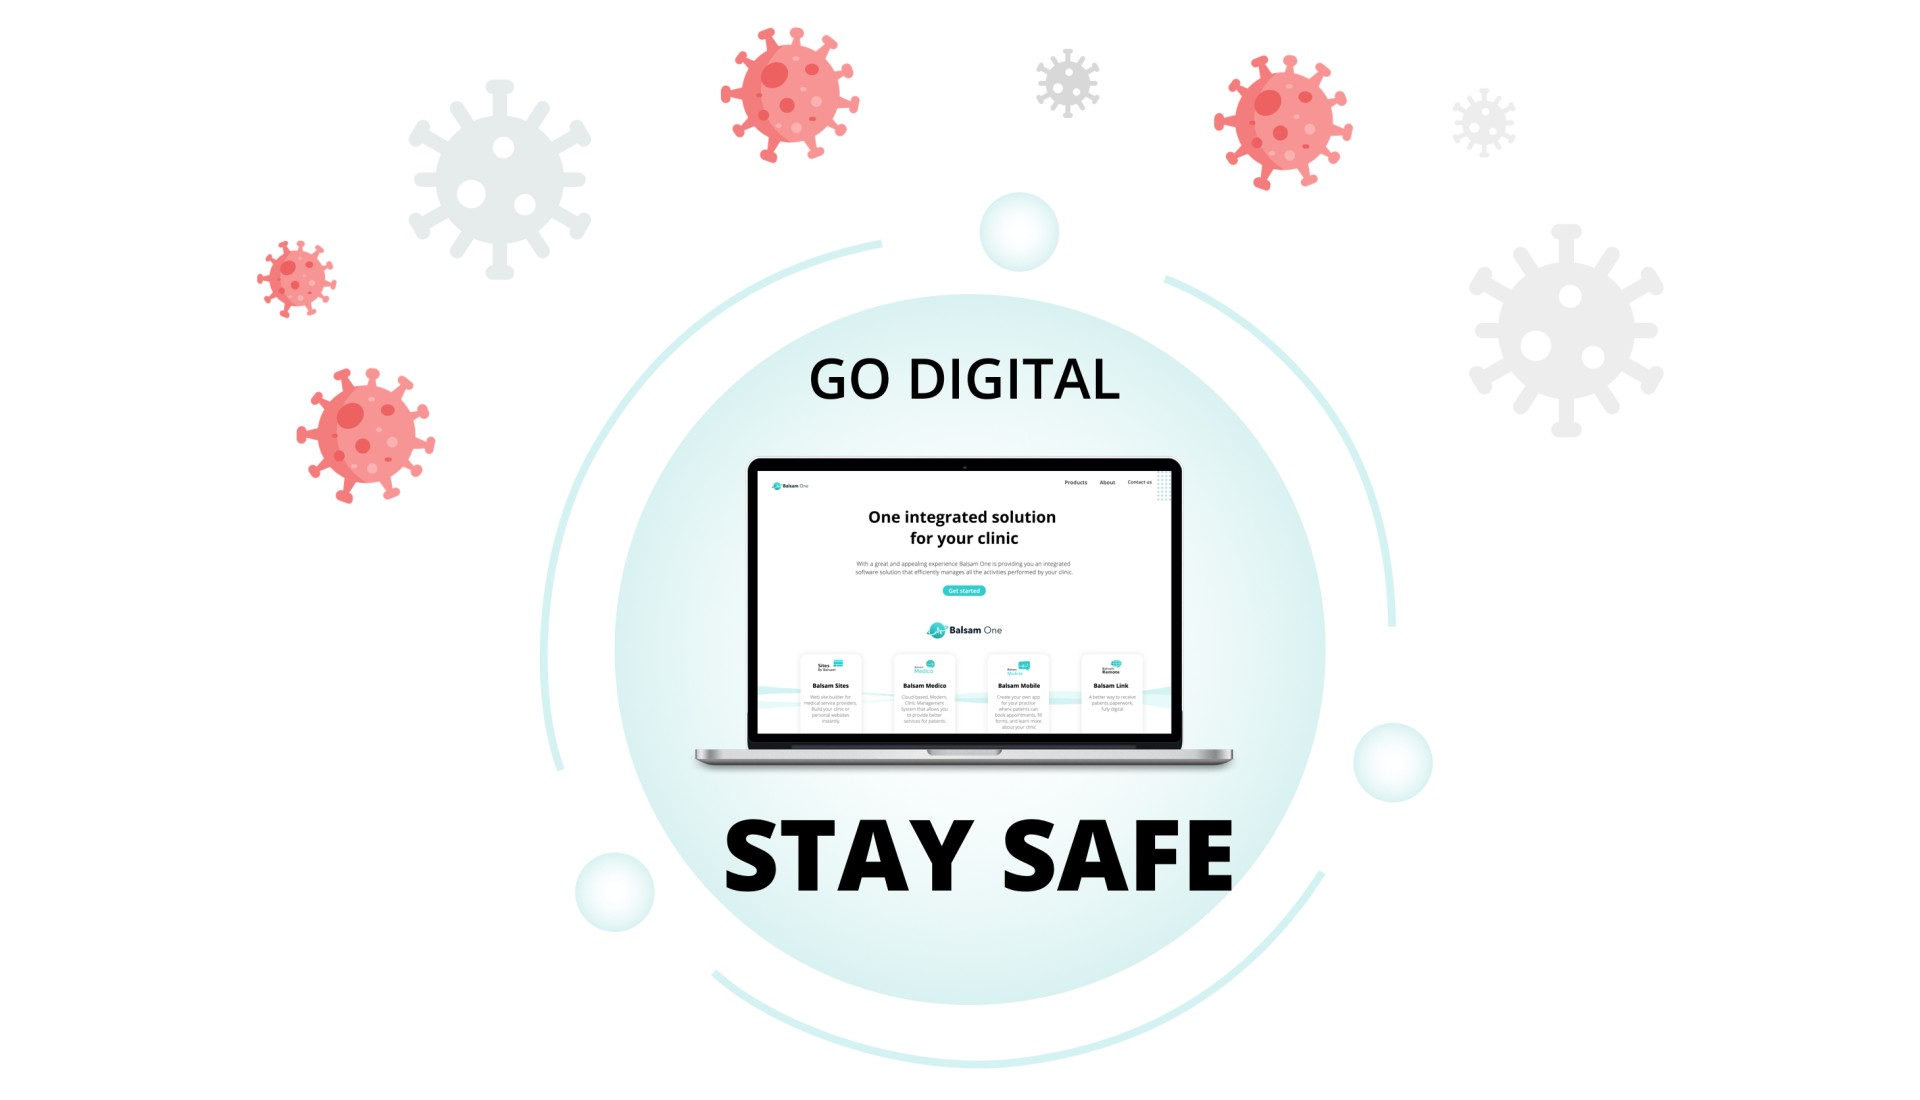 Stay safe. Go Digital